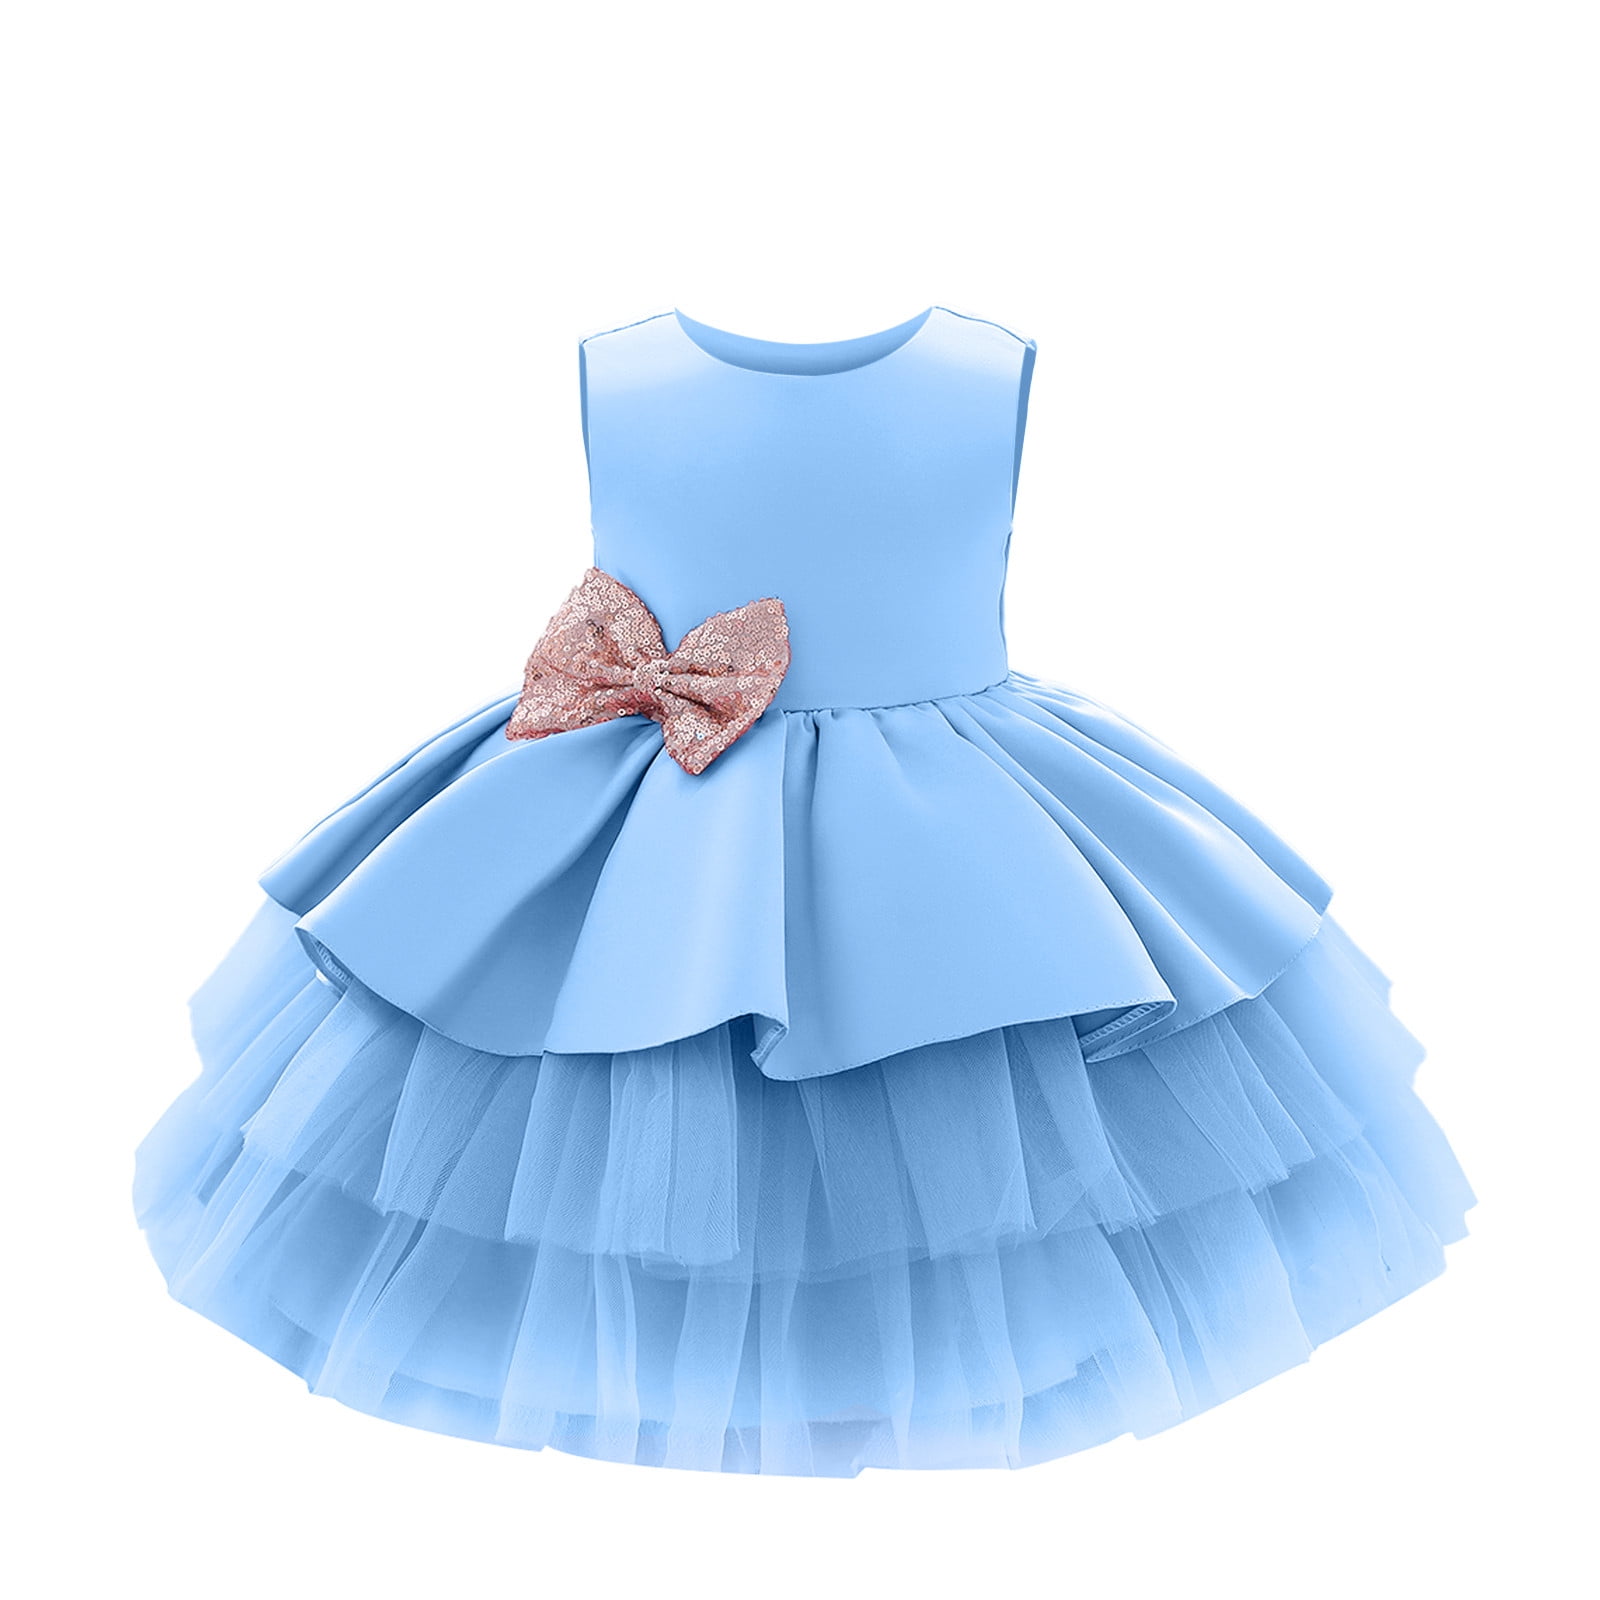 REORIAFEE Girls' School Uniform Dress Children Dress Sequin Bowknot ...